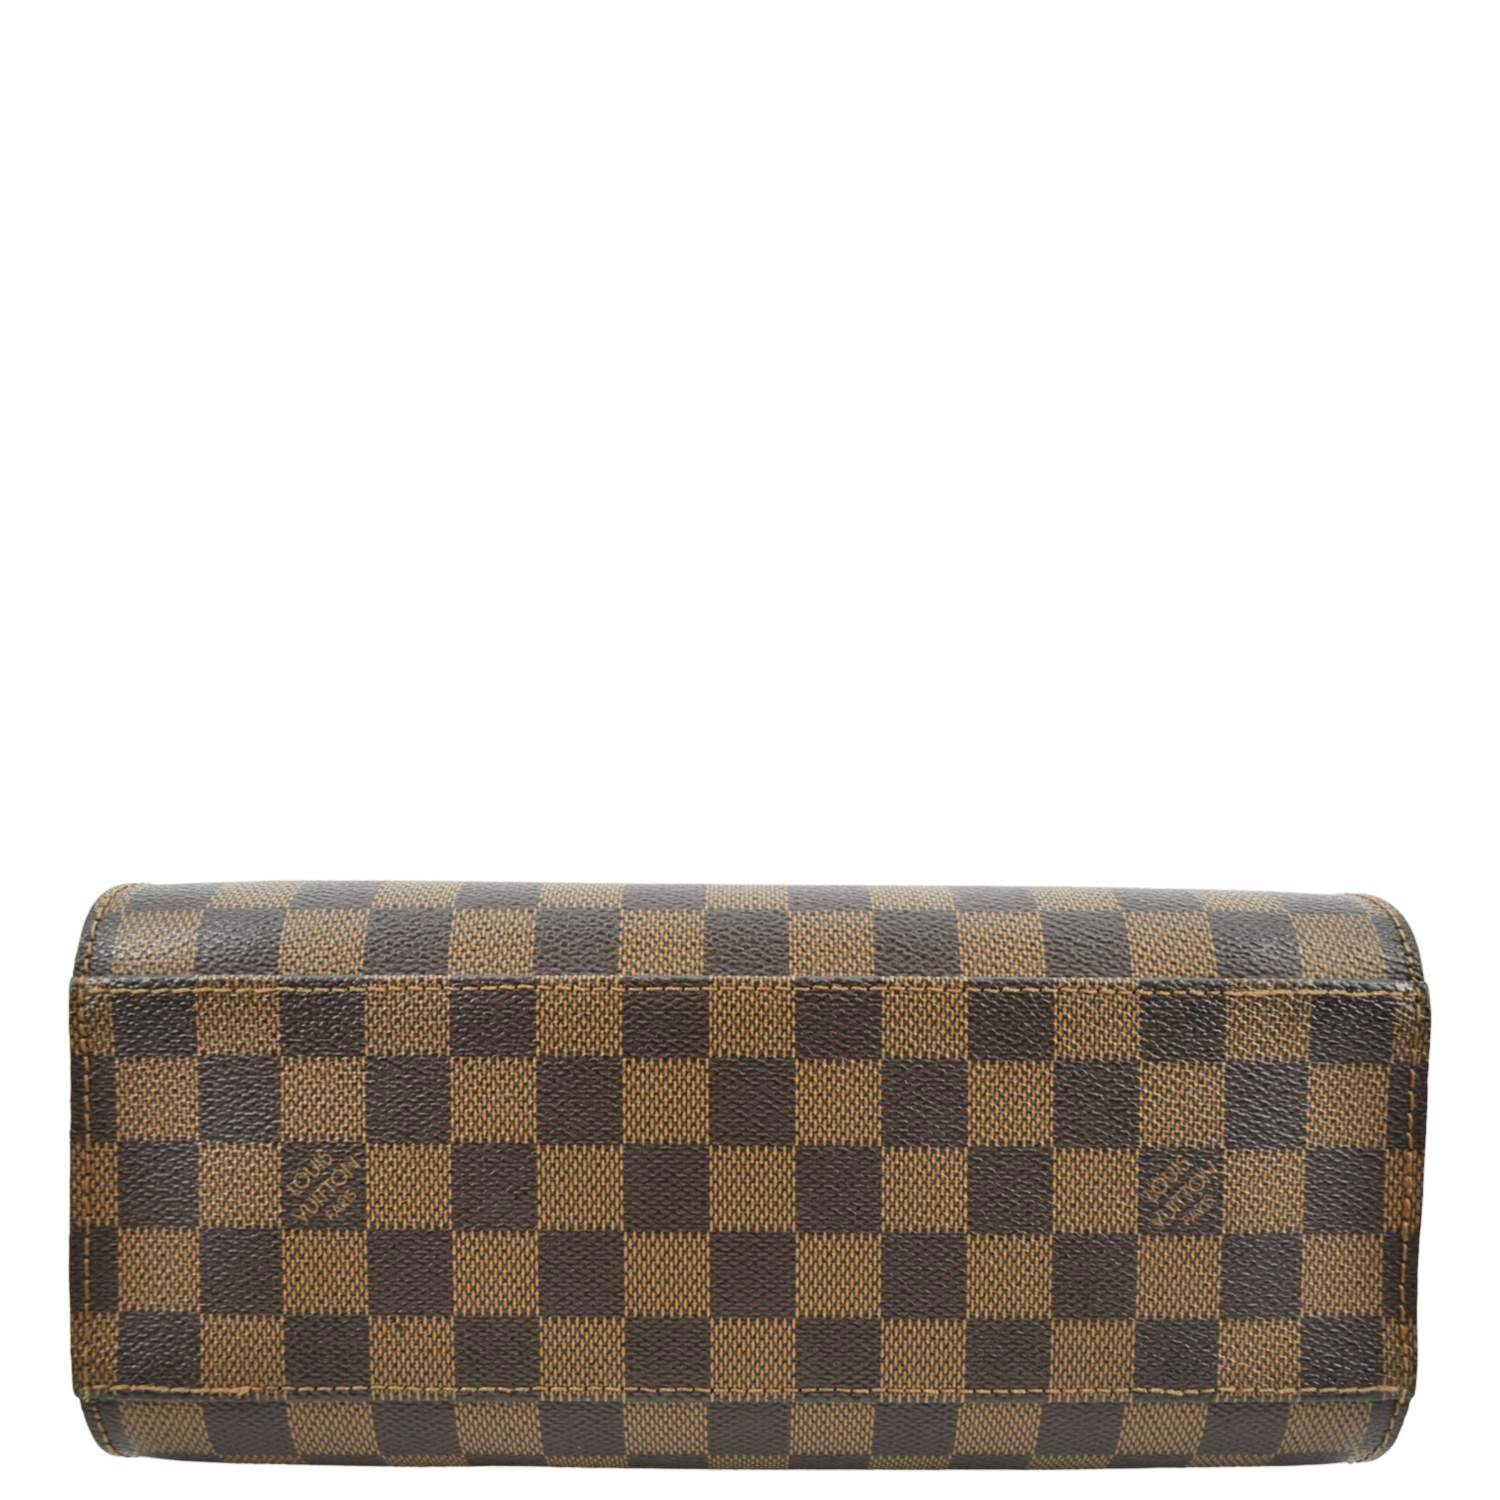 Louis Vuitton, Bags, Authentic Louis Vuitton Bag Damier Ebene Triana  Handbag Tote Shoulder Bag